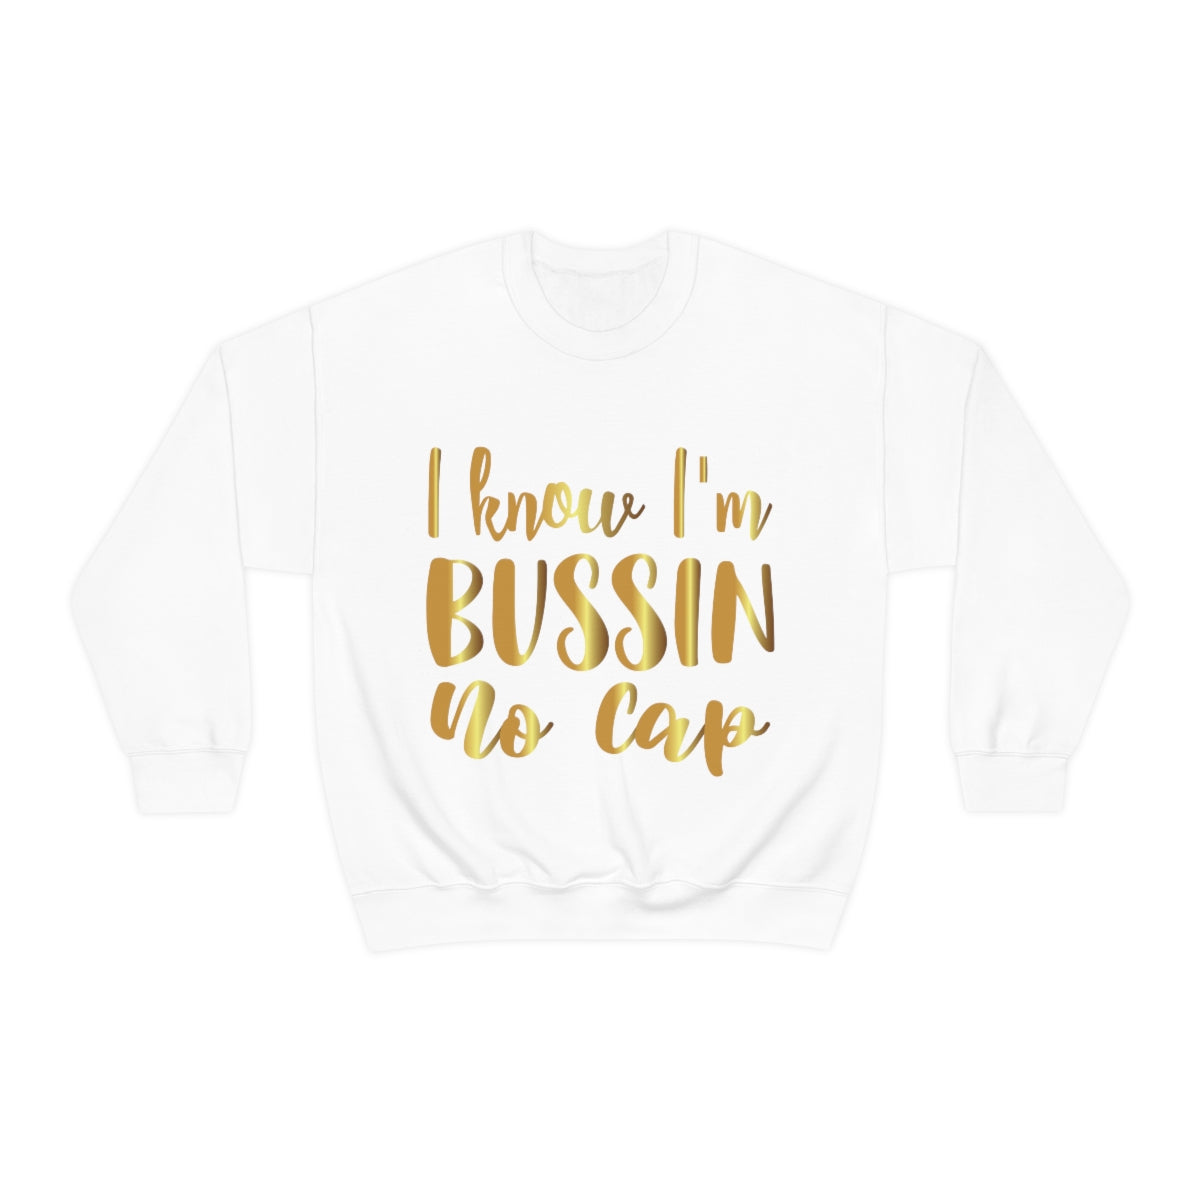 Affirmation Feminist Pro Choice Sweatshirt Unisex  Size –I Know I Am Printify